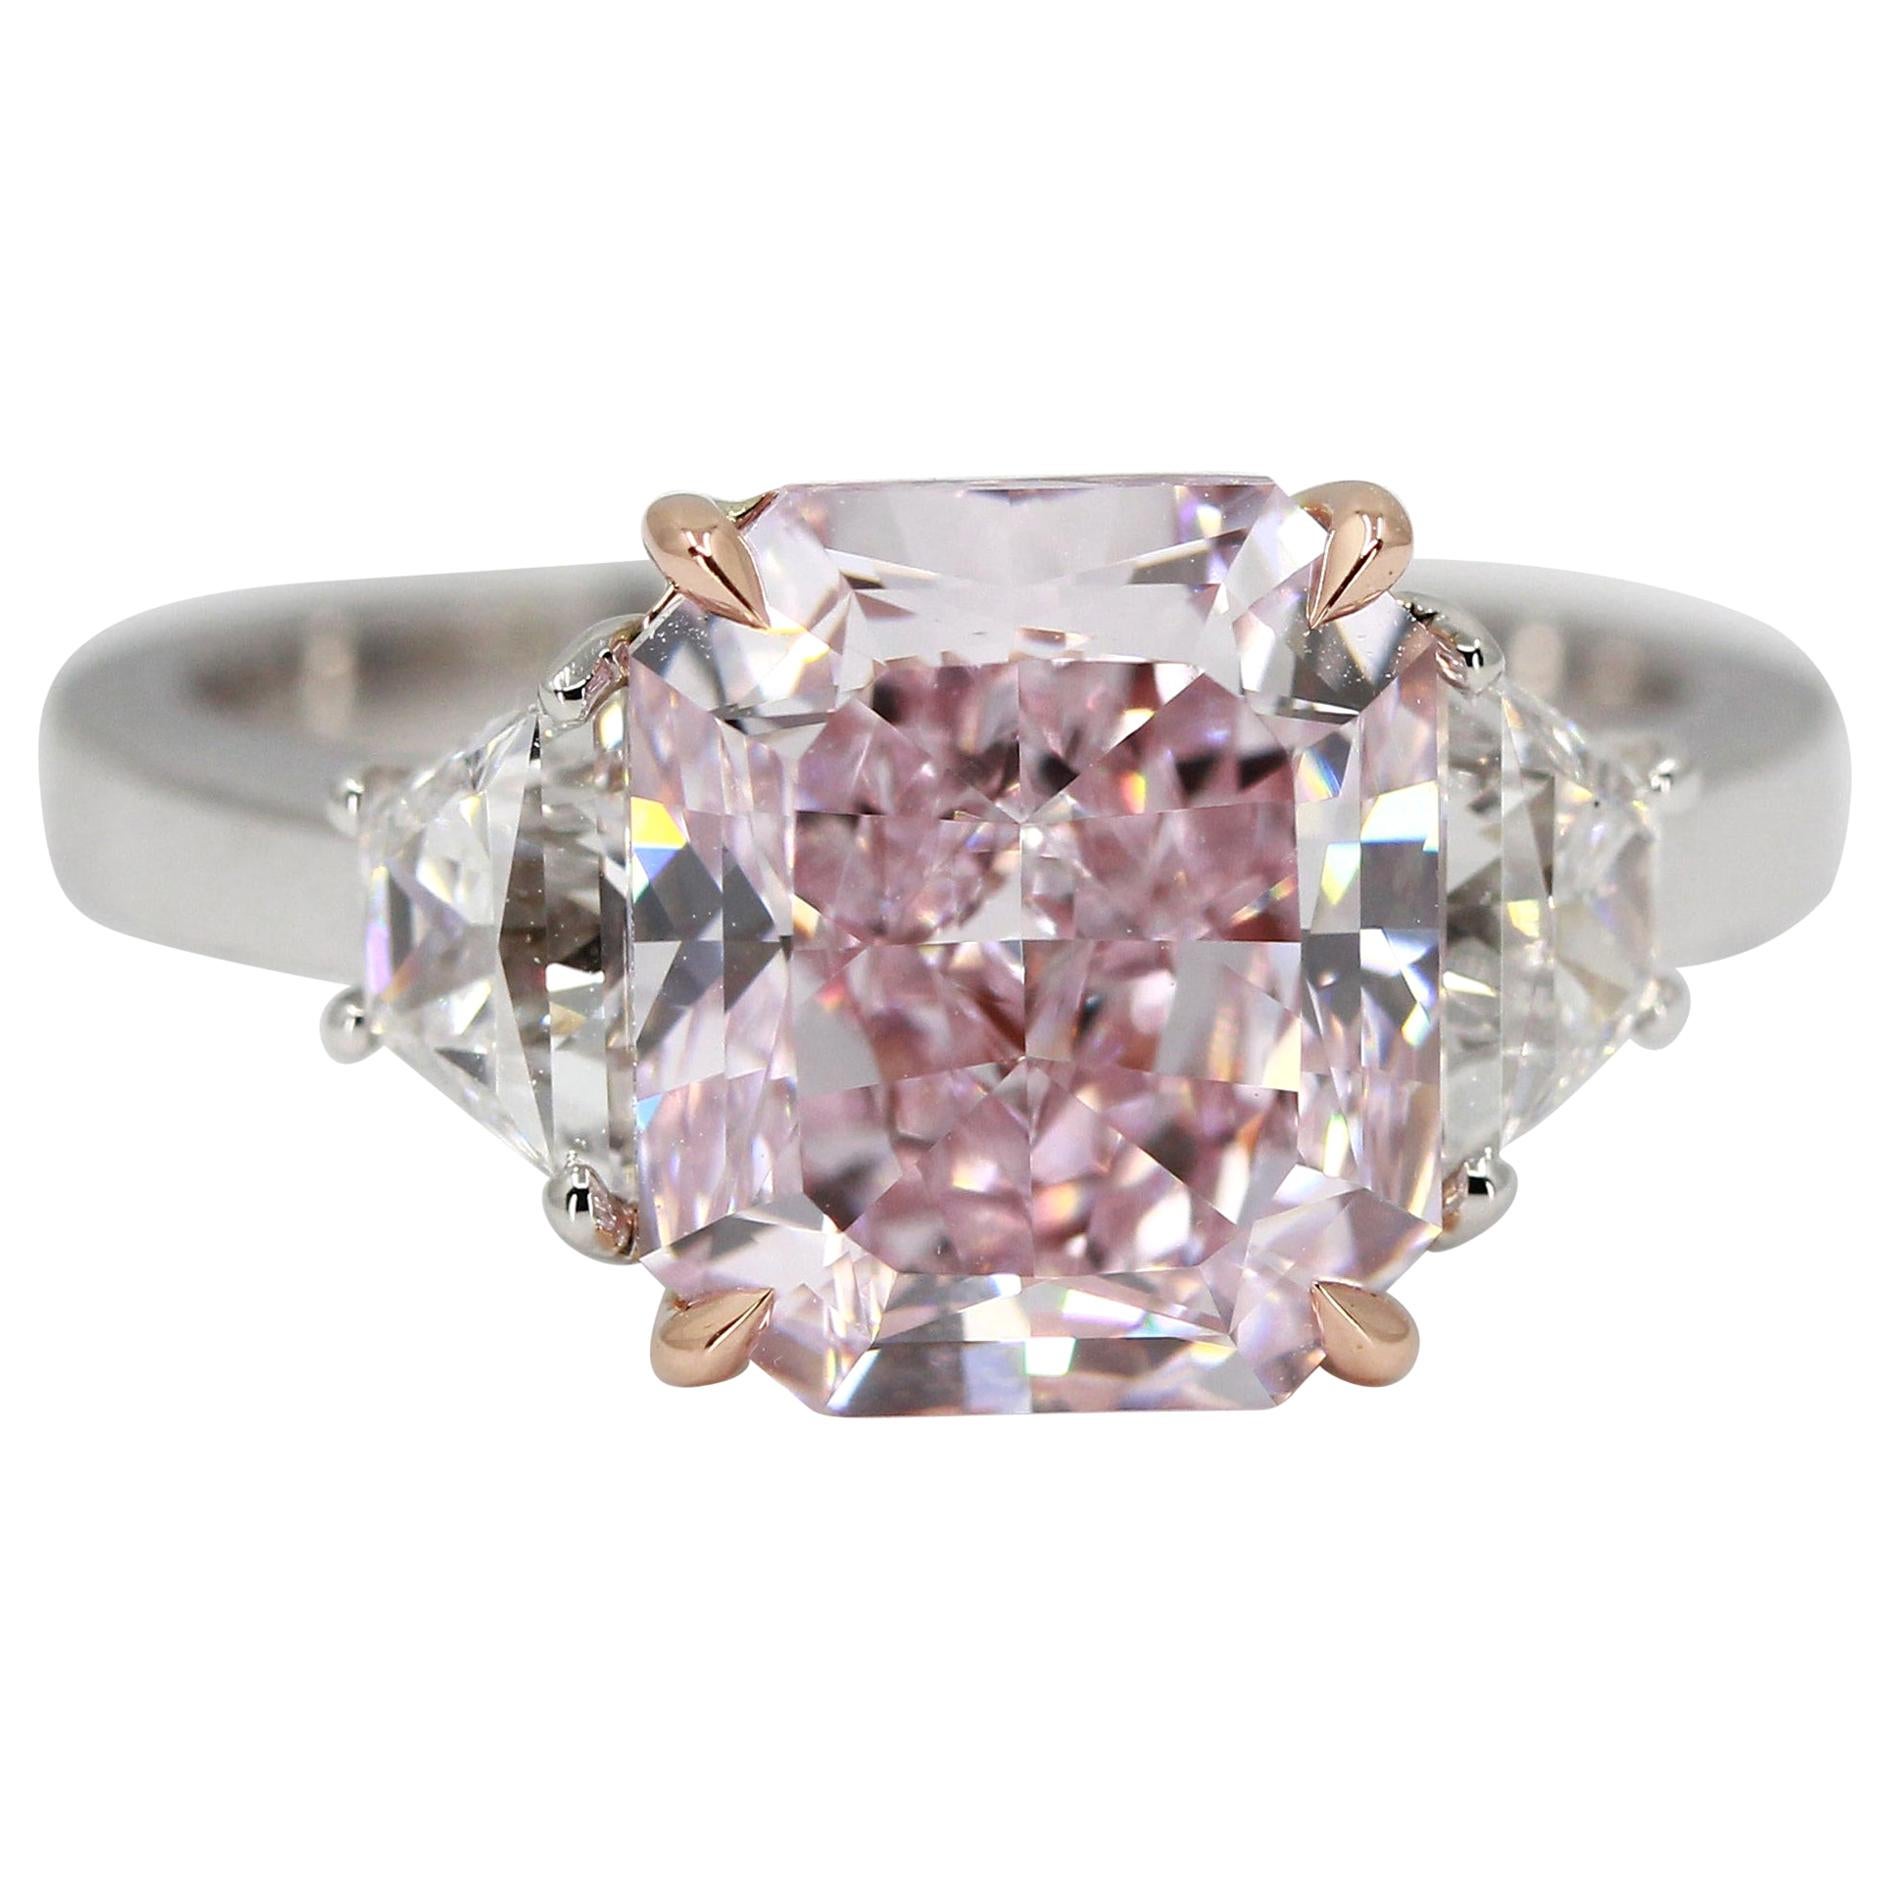 GIA Certified 4.24 Carat Fancy Purplish Pink Internally Flawless Diamond Ring